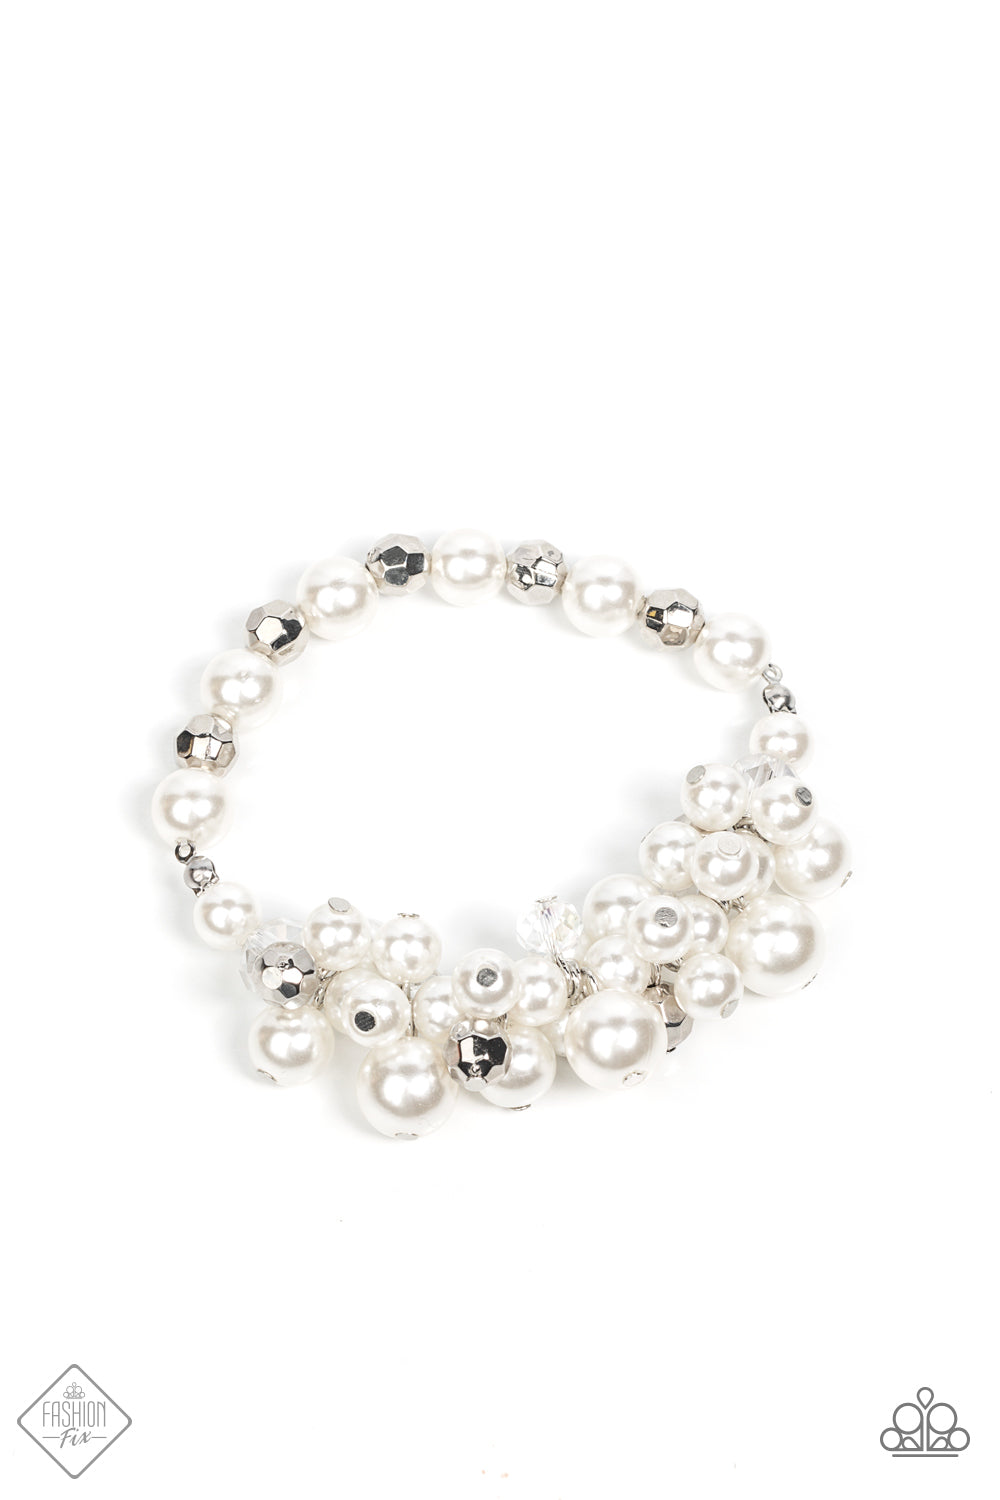 Elegantly Exaggerated - White Bracelet (FFA-0122) freeshipping - JewLz4u Gemstone Gallery